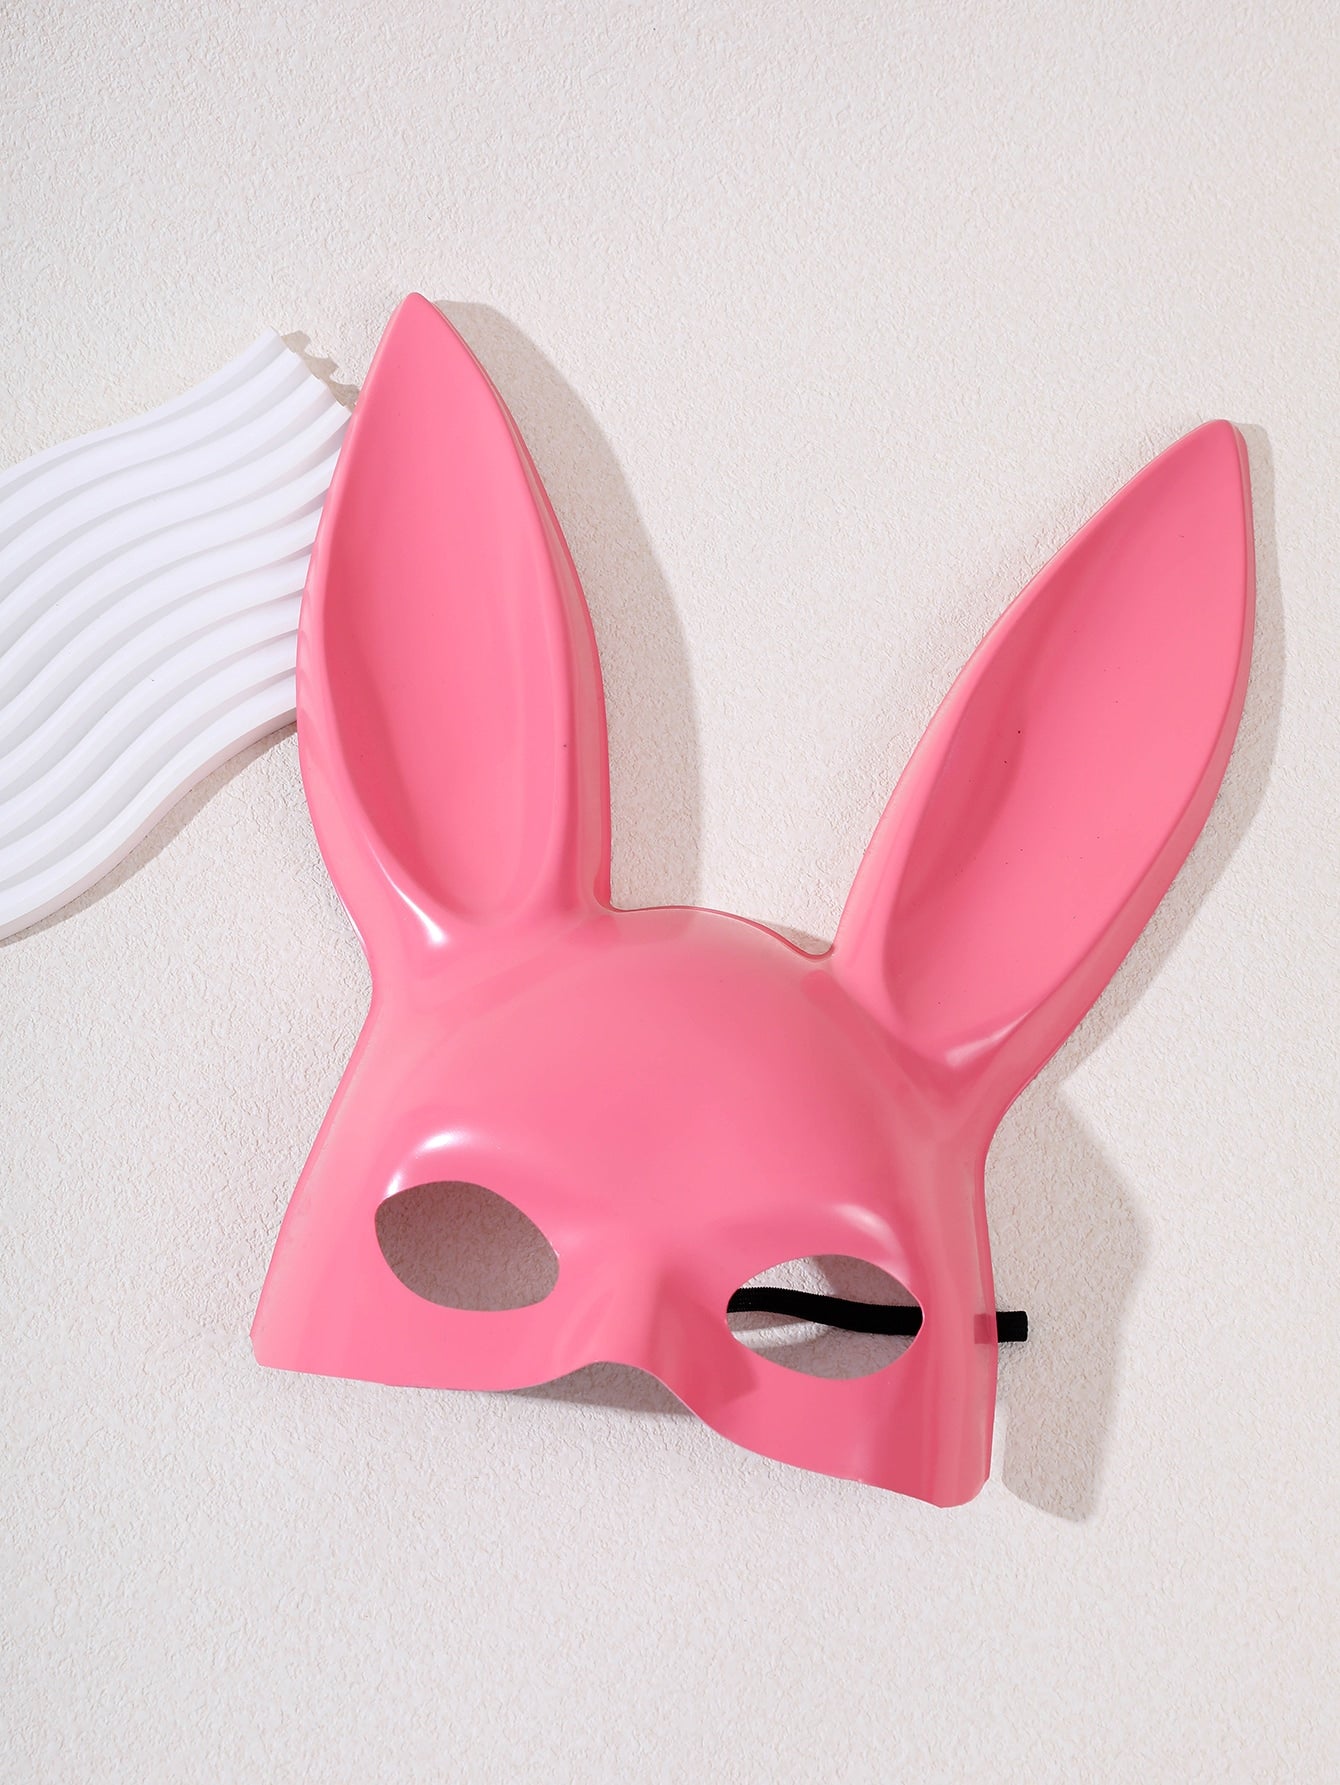 Rabbit Head Design Costume Face Shield